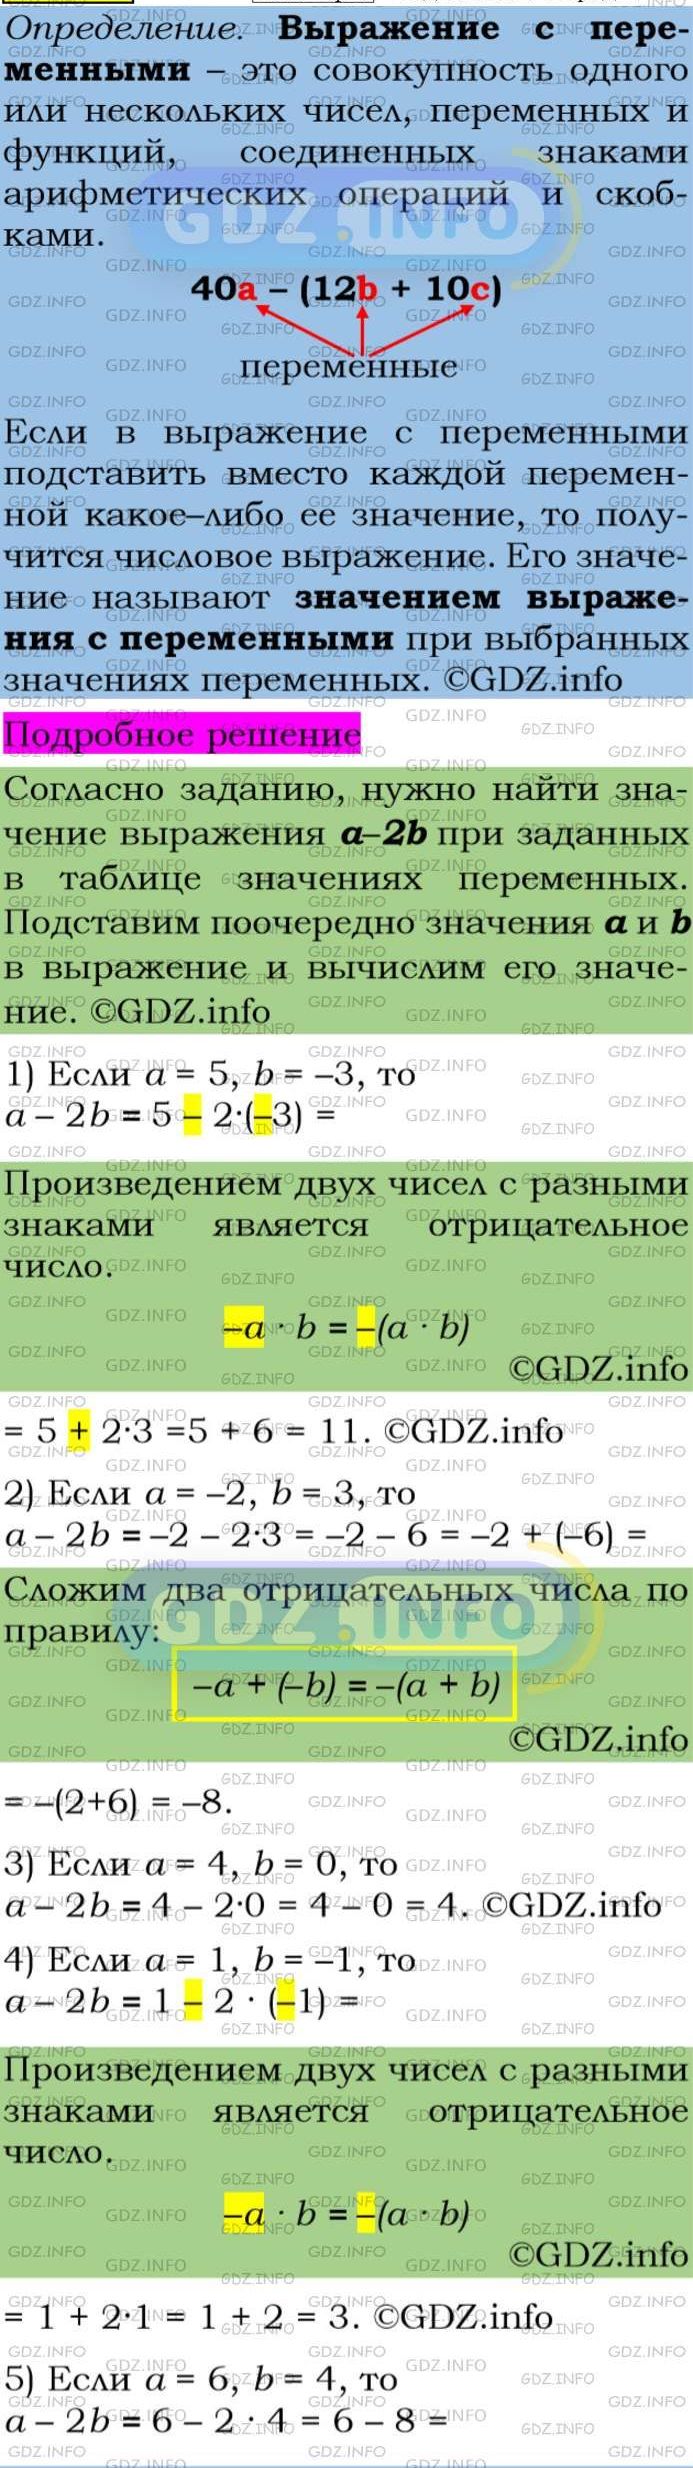 Фото подробного решения: Номер задания №43 из ГДЗ по Алгебре 7 класс: Макарычев Ю.Н.